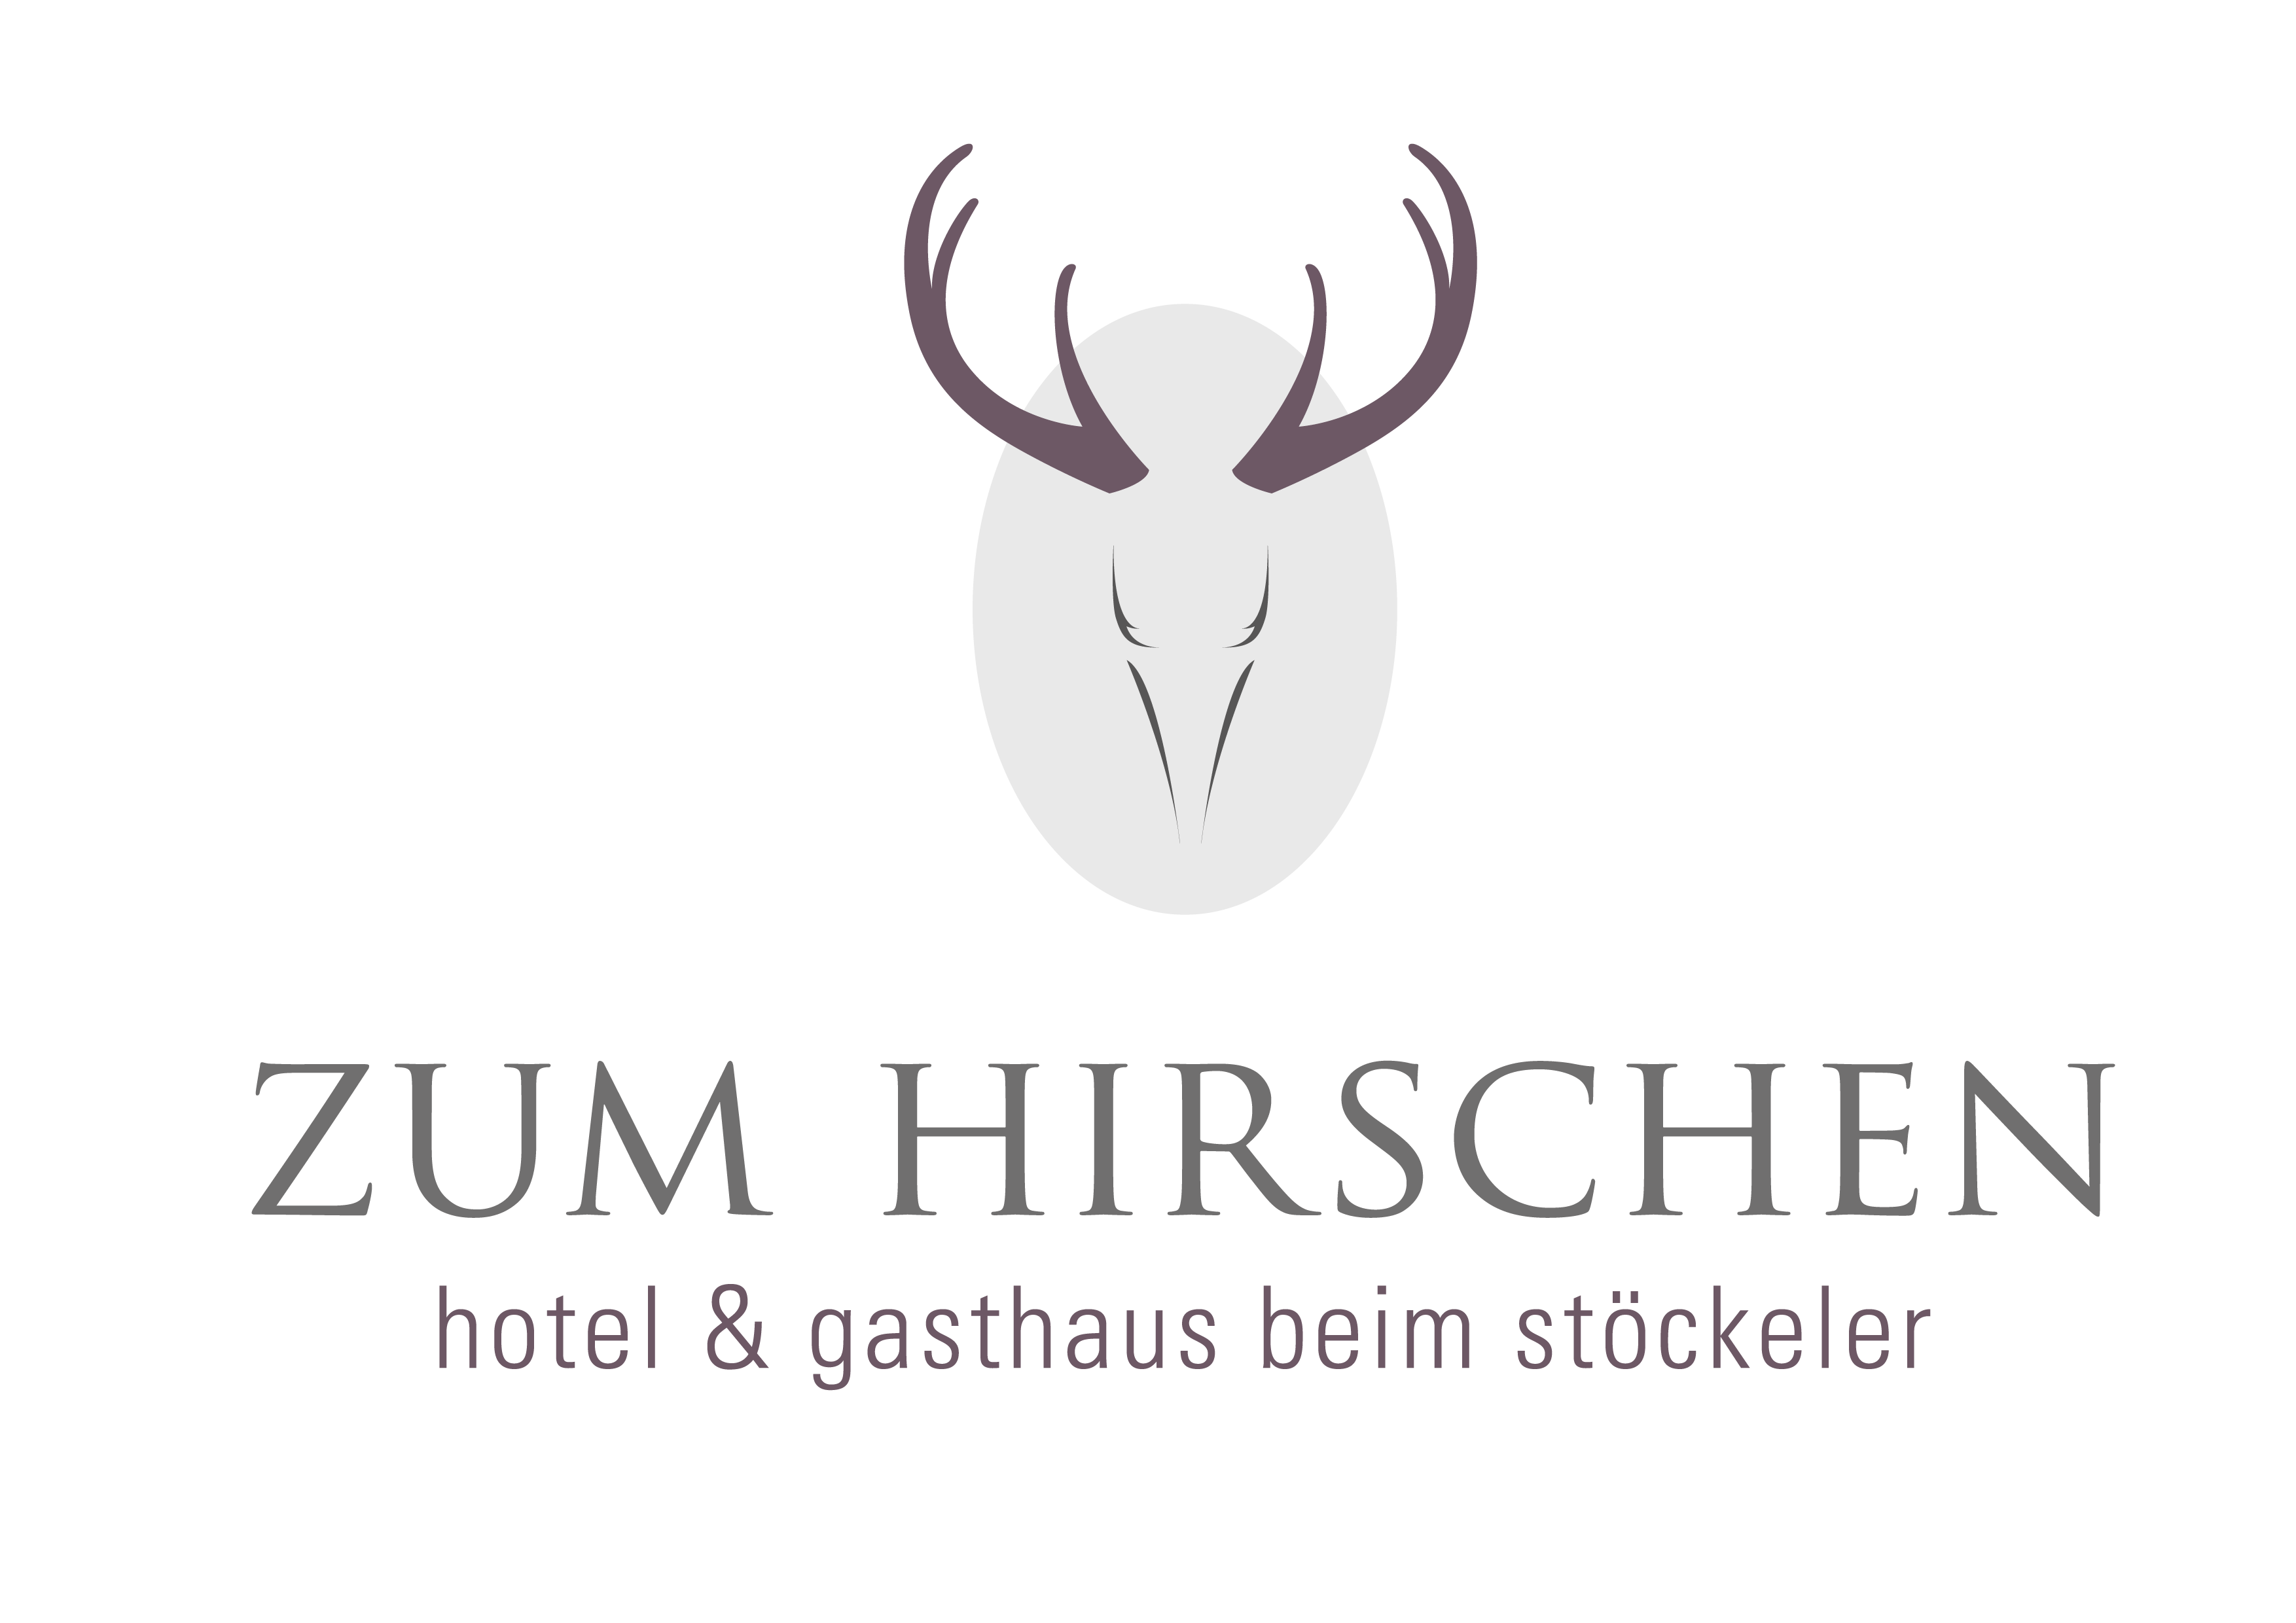 ZUM HIRSCHEN - hotel & gasthaus beim stöckeler